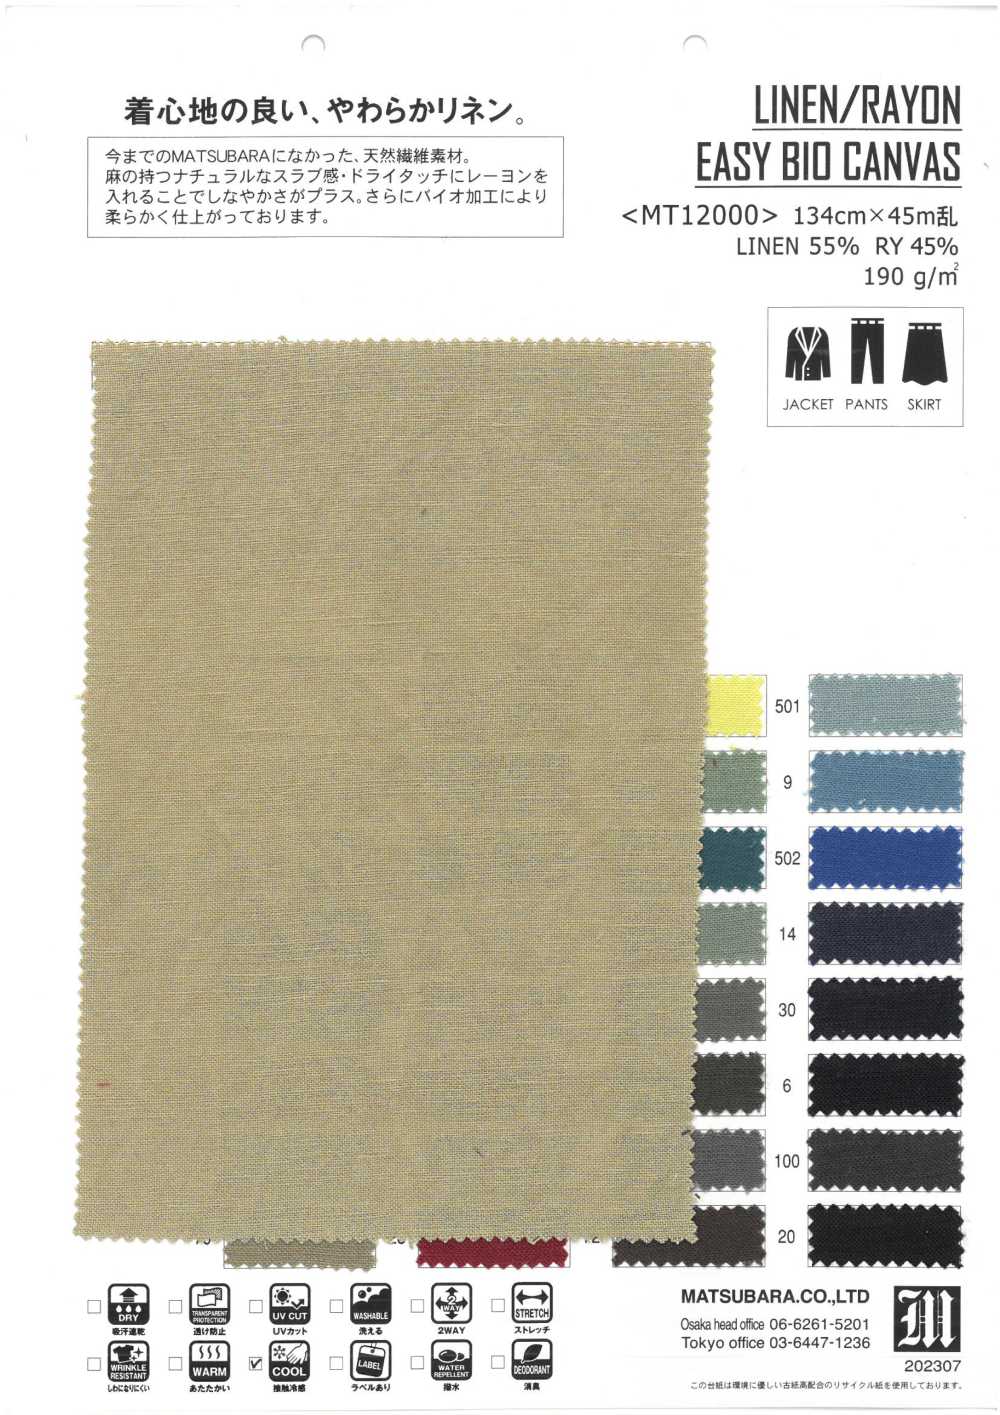 MT12000 LINEN/RAYON EASY BIO CANVAS[Textile / Fabric] Matsubara